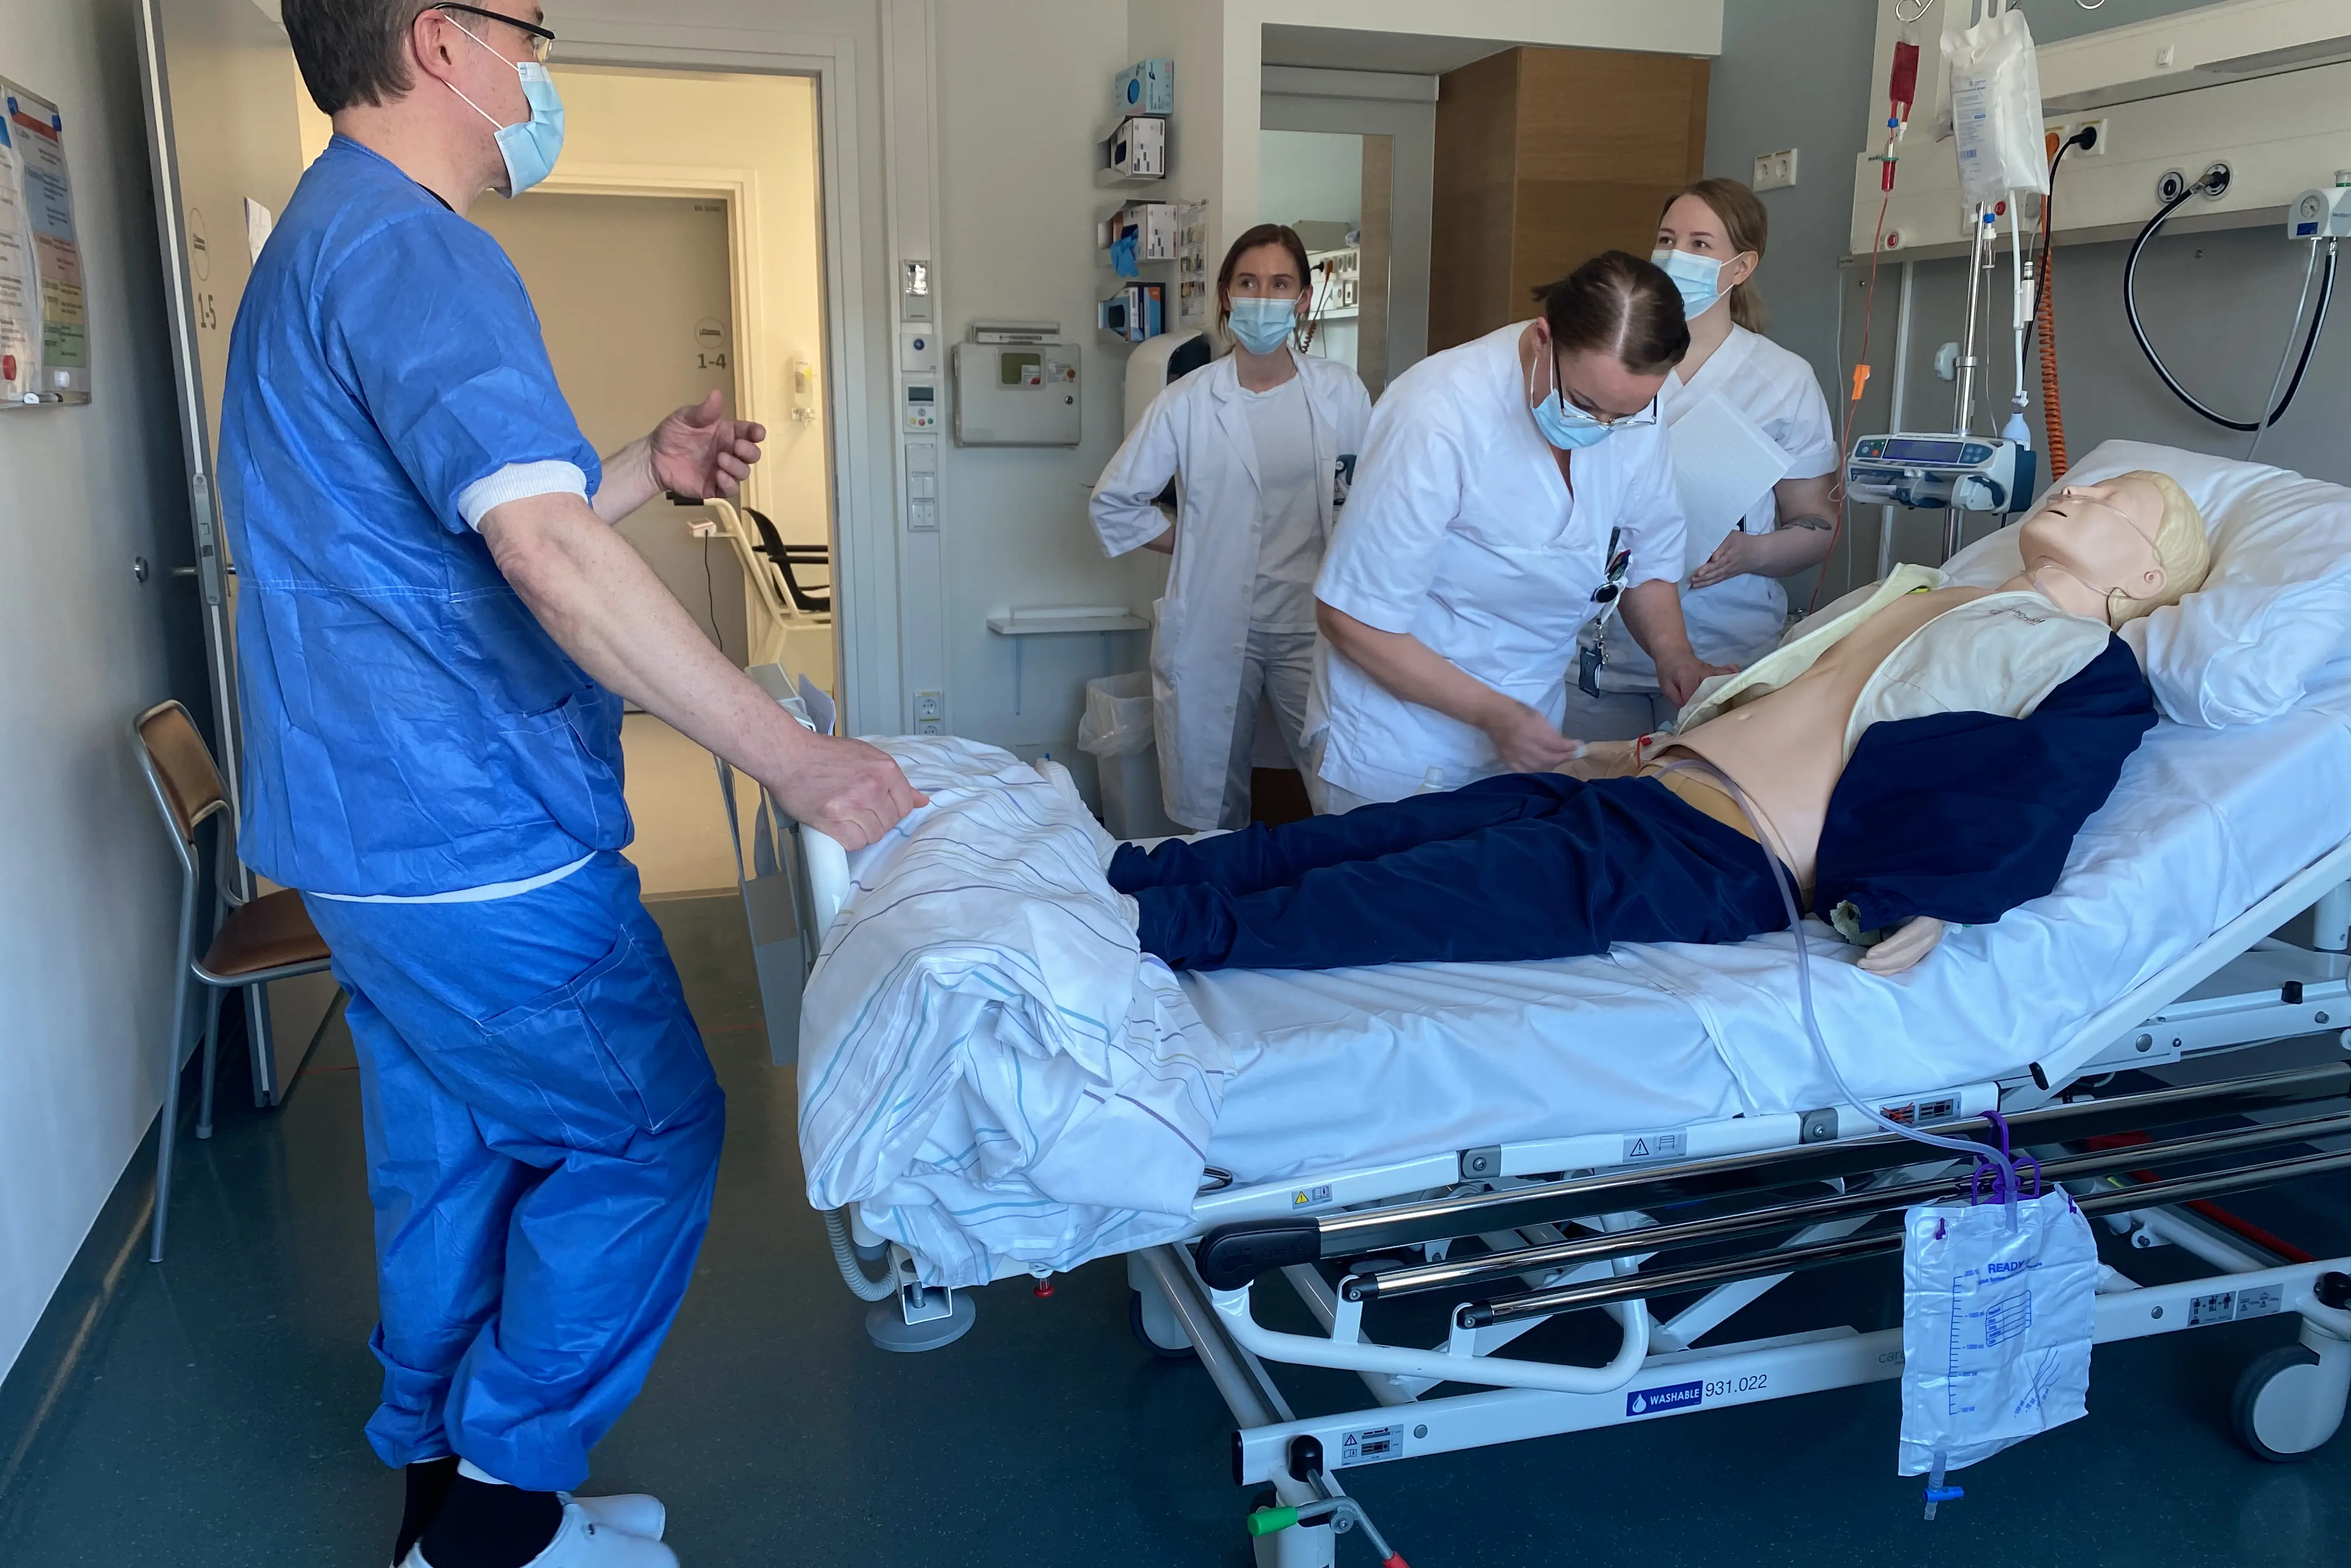  Anestesisykepleier Jesper Törjas ledet casesimuleringene på kirurgisk avdeling under opplæringsukene. Foto: Malene Nicolaysen 